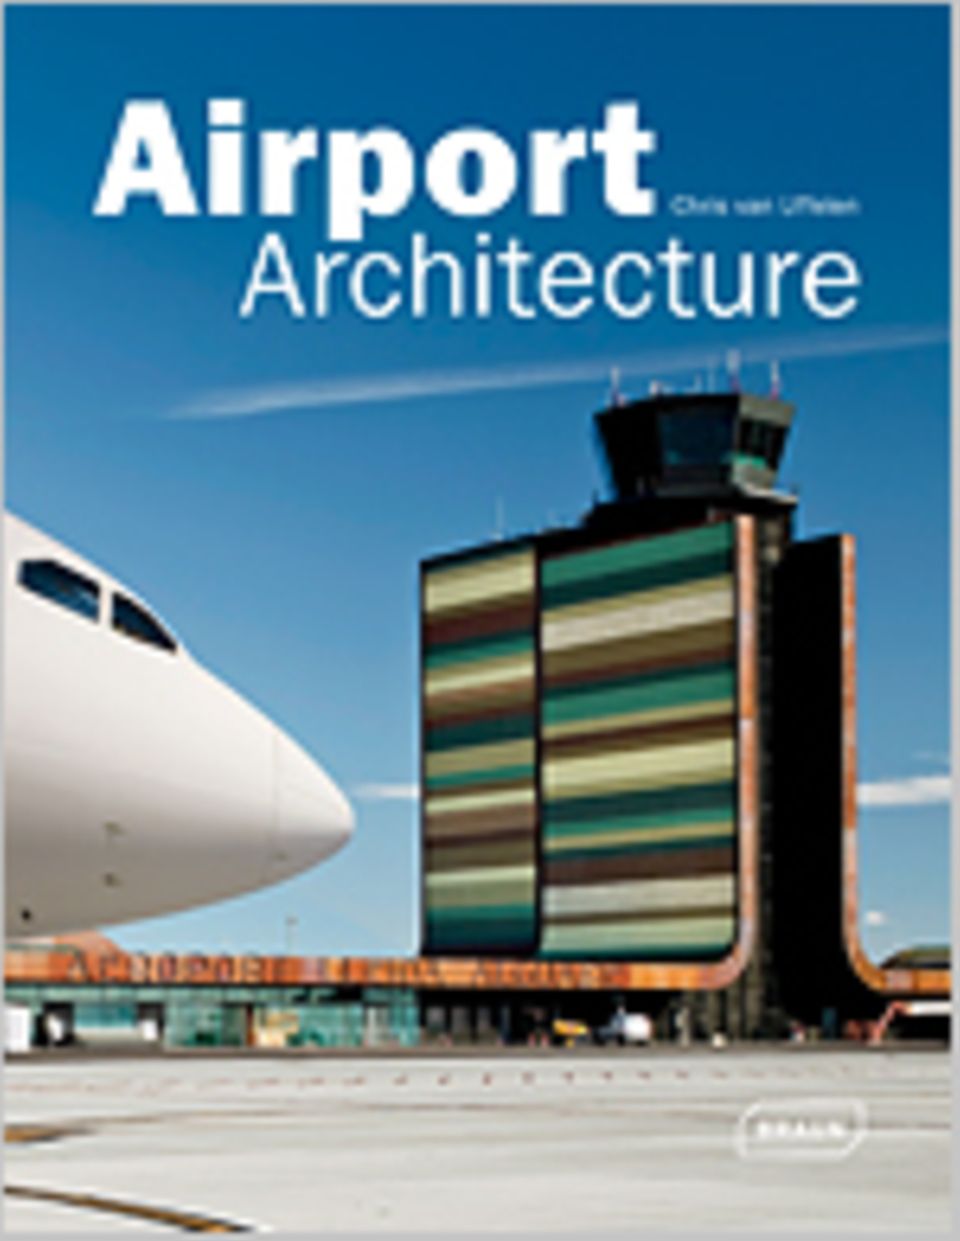 Airport Architecture, 272 Seiten, 2012, Text in Englisch, 49,90 Euro, erschienen bei Braun Publishing AG